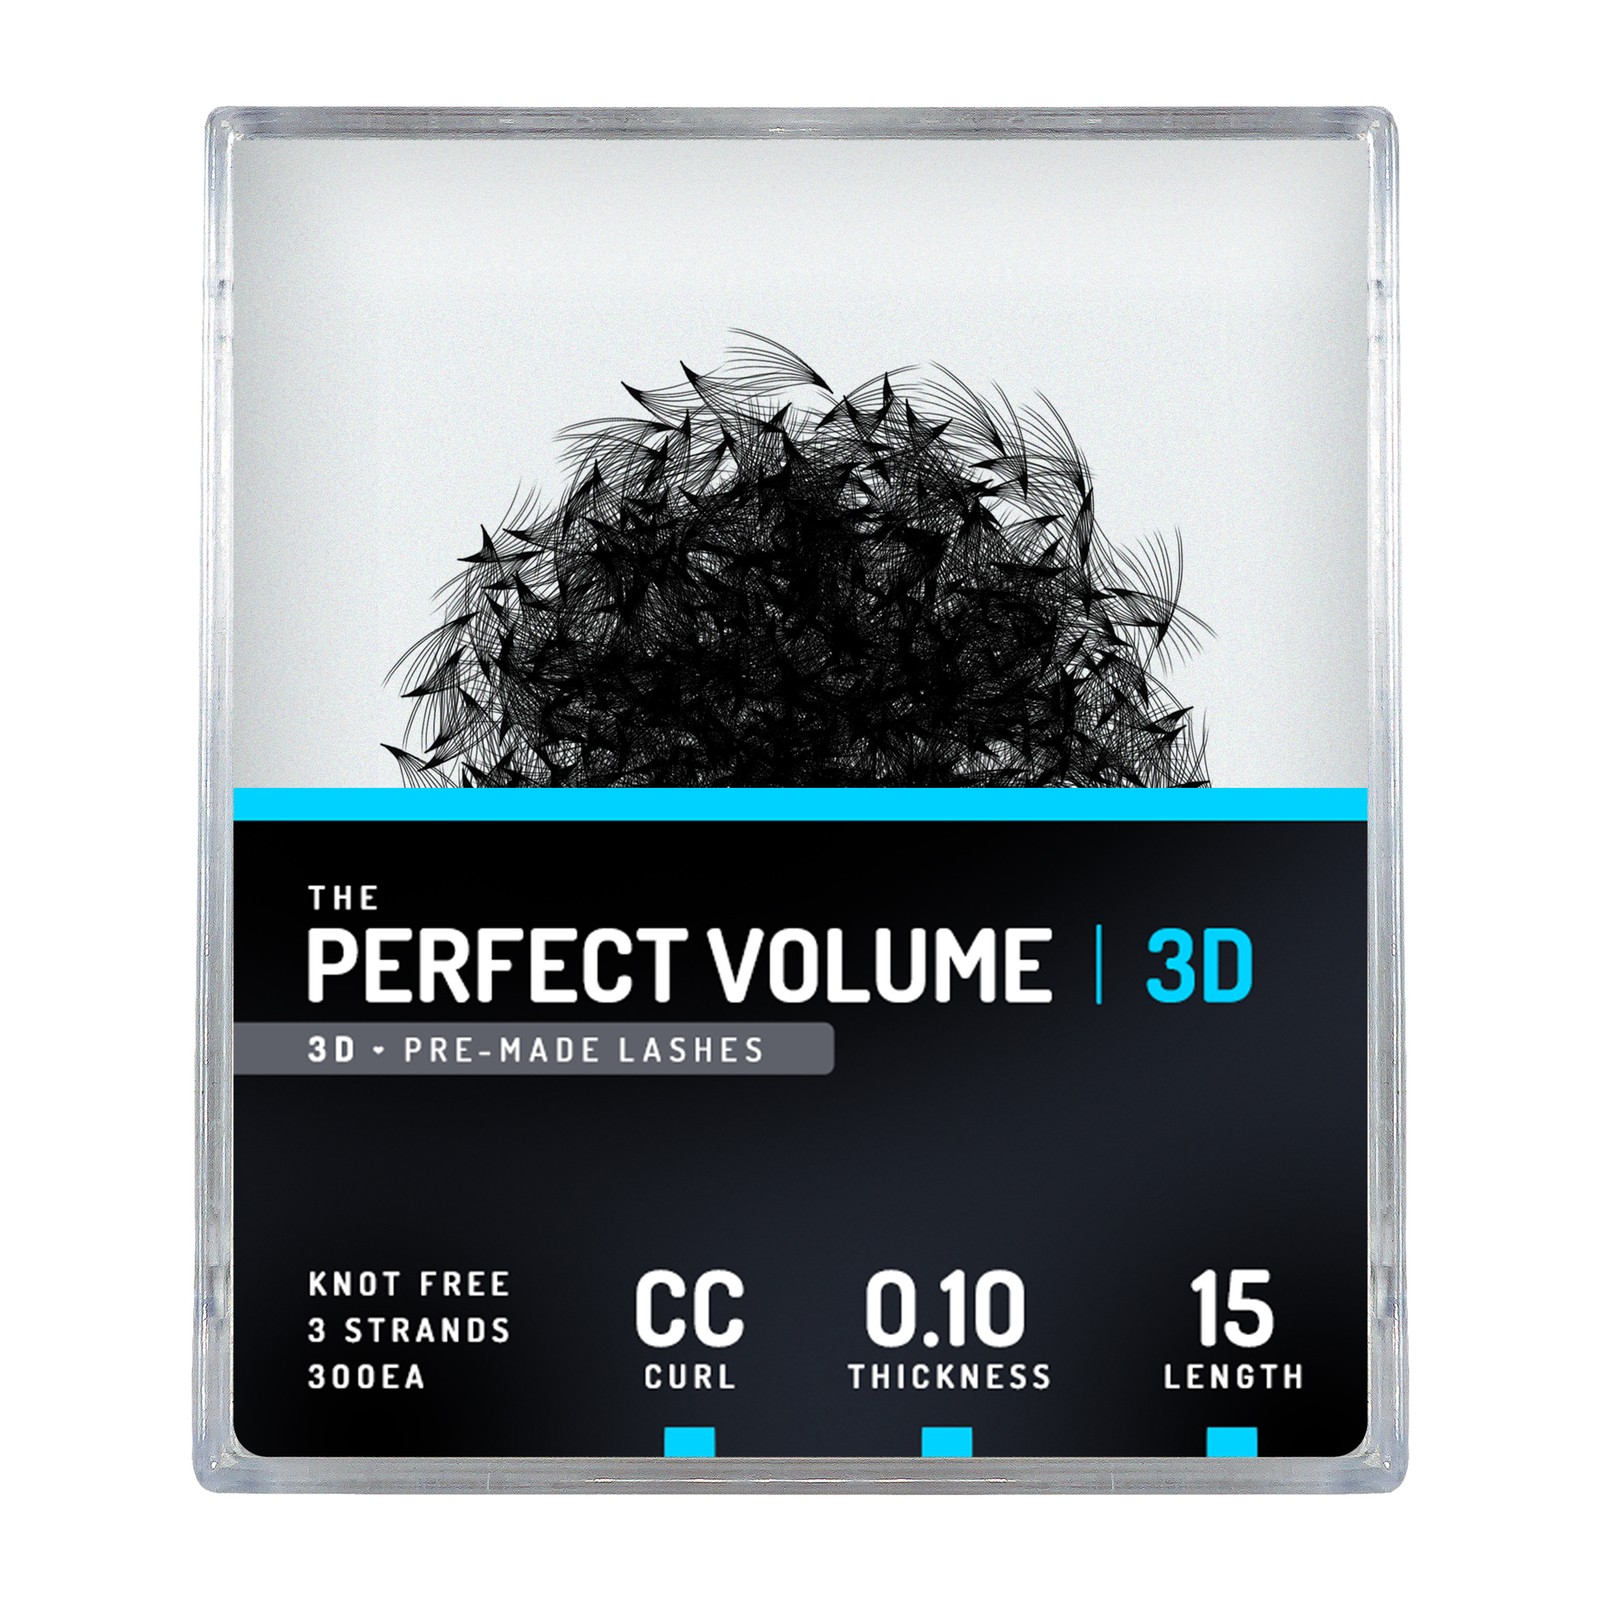 Volume parfait -  300 buchesele premade 3D -  15mm, CC, 0.10mm